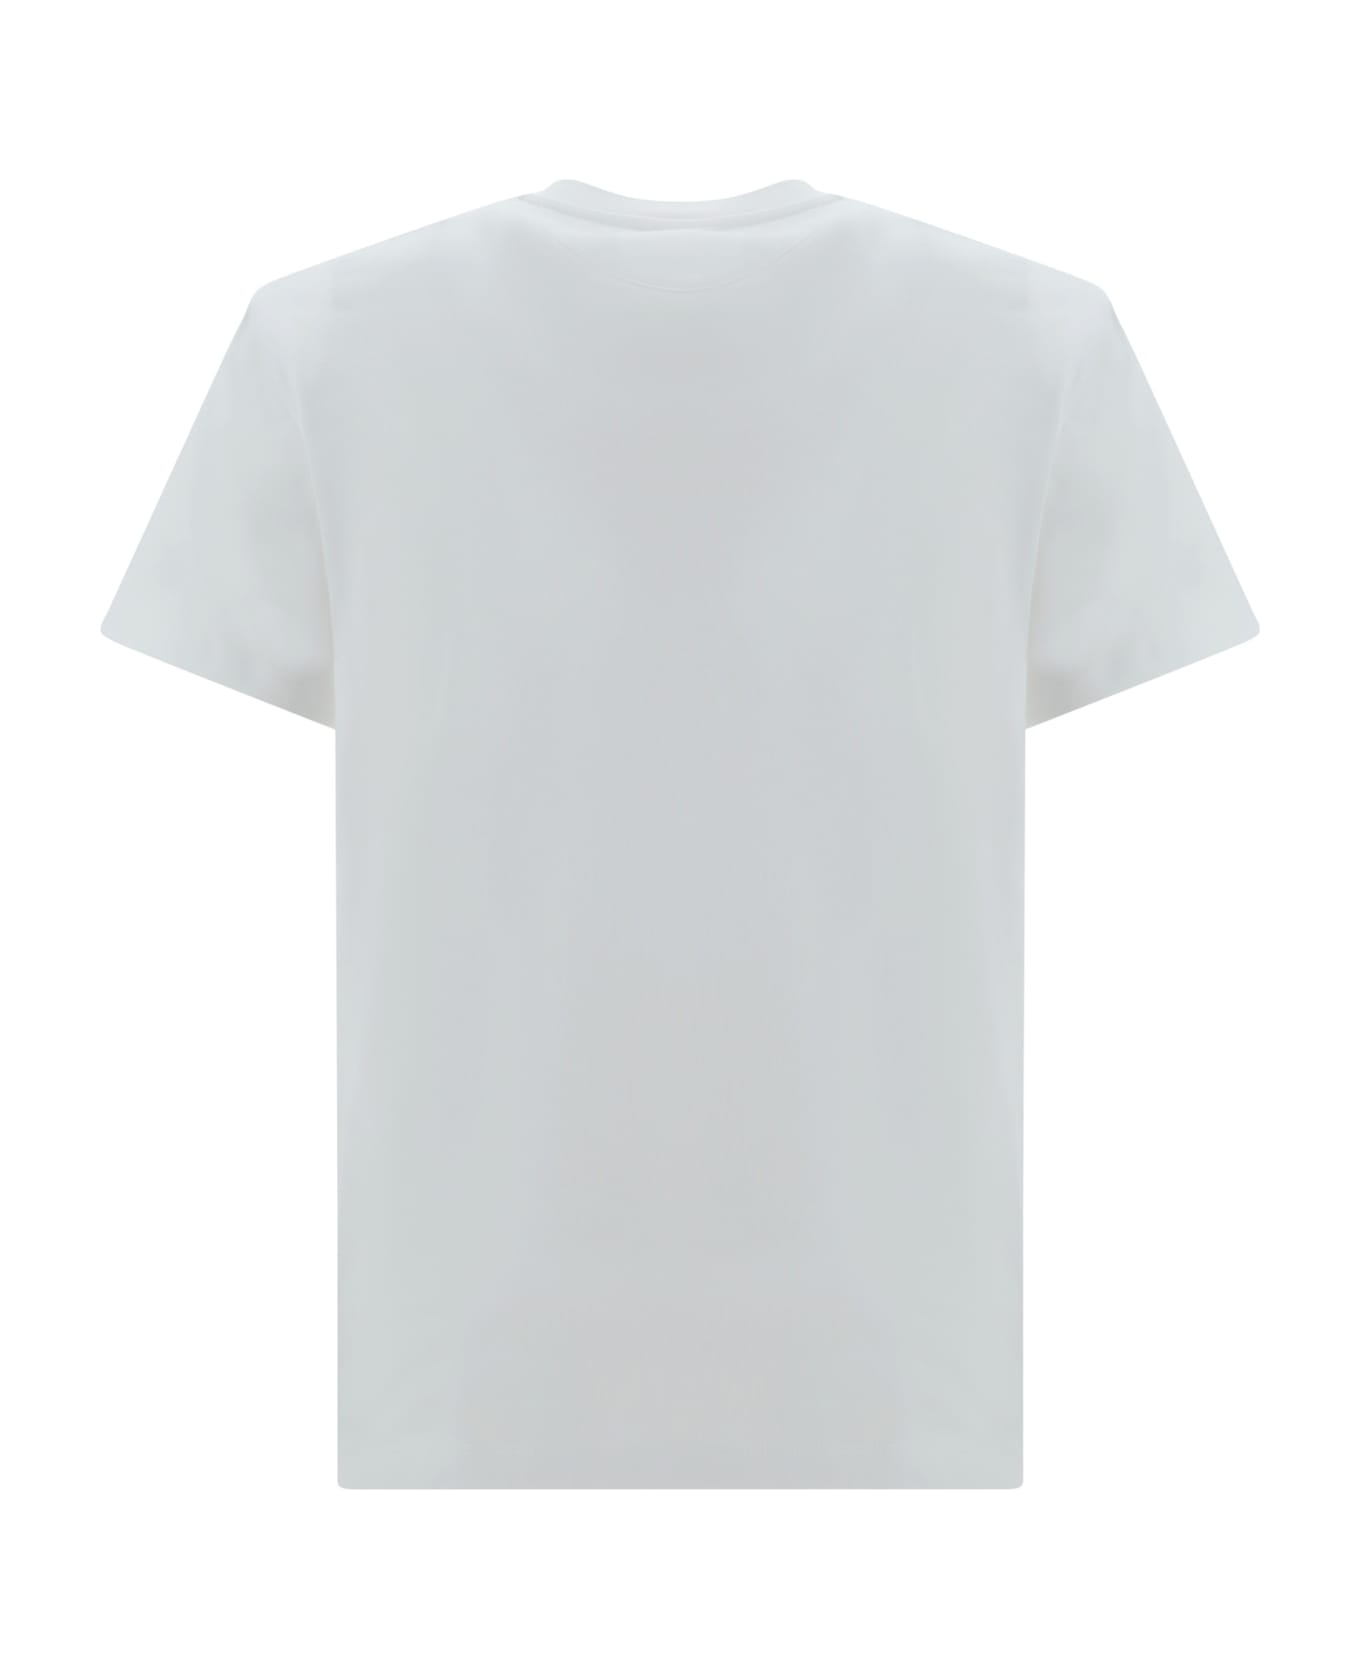 Valentino T-shirt - White シャツ